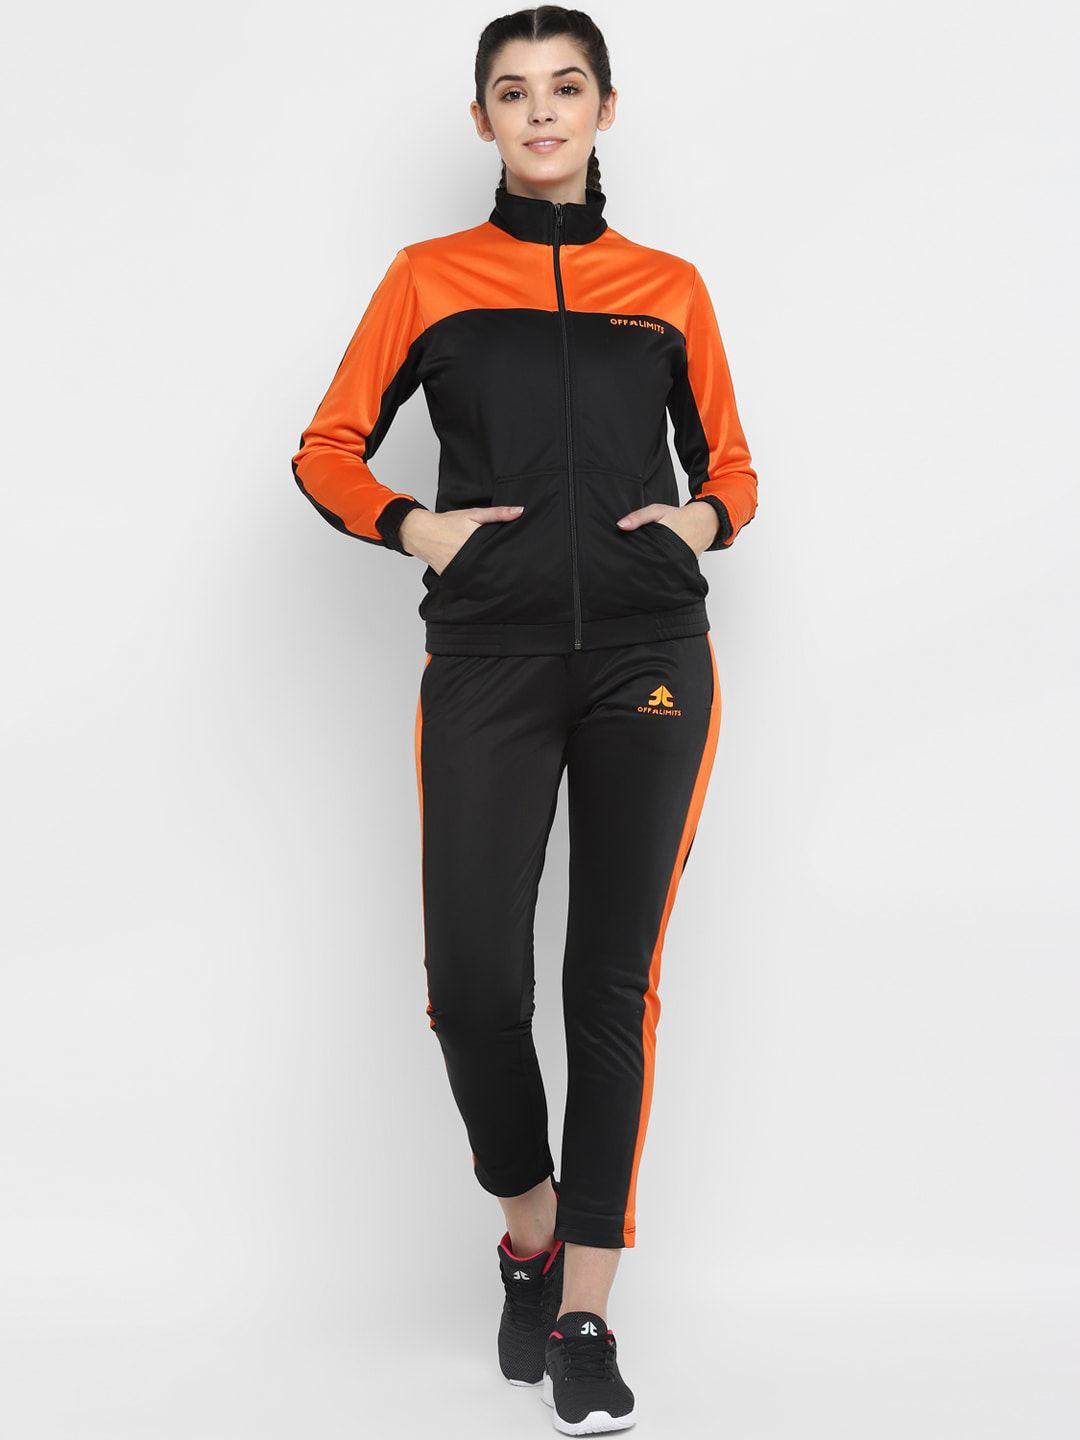 off limits women black & orange colorblocked track suit